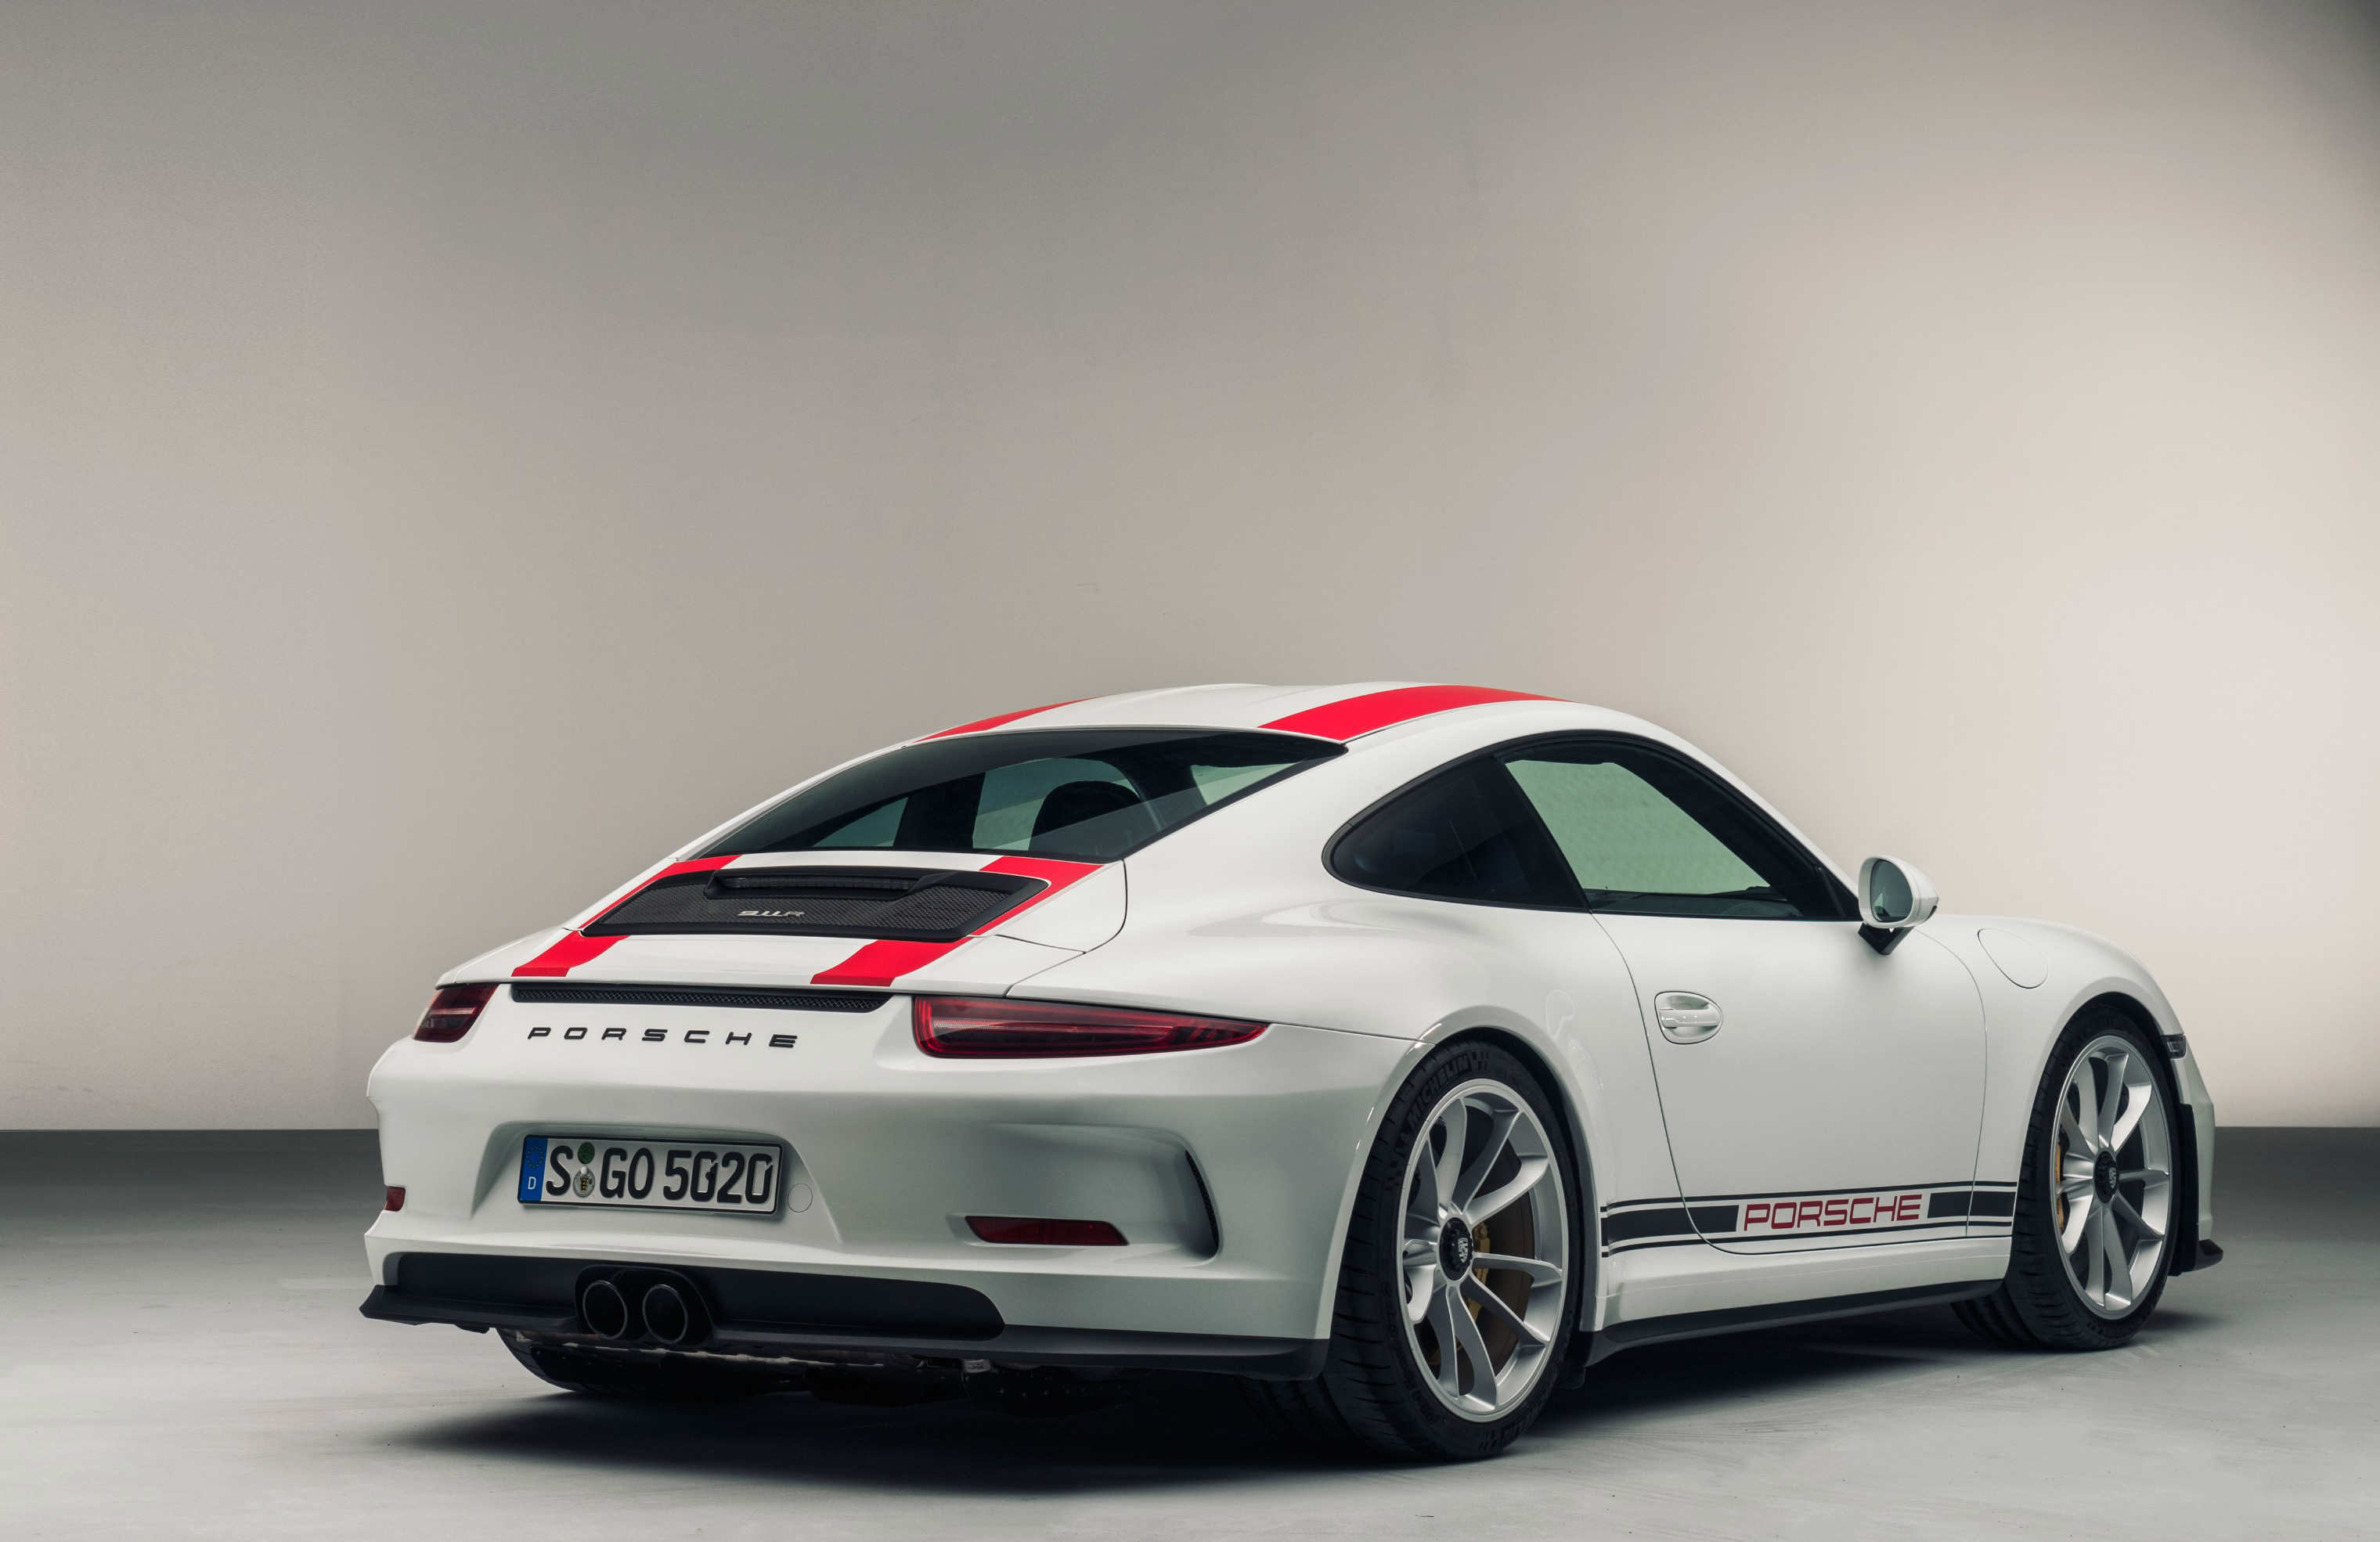 Meet the new Porsche 911 R - sold out six months ago